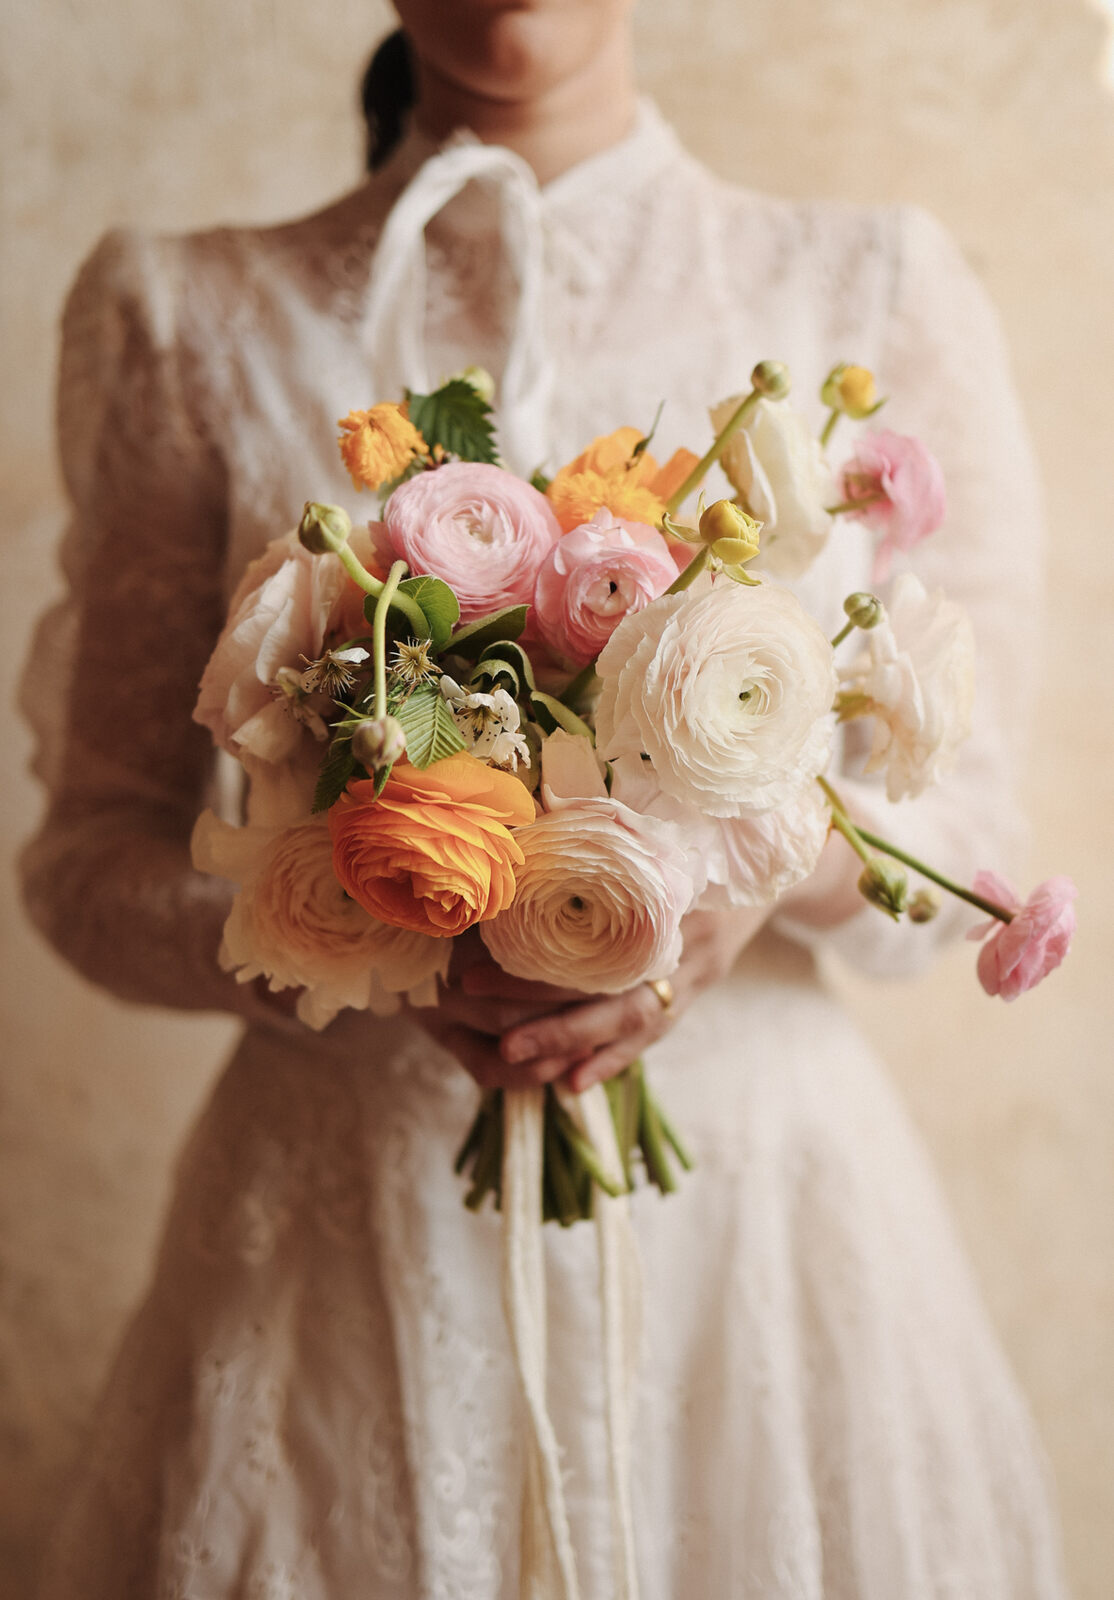 mulher com vestido de noiva vintage com manga longa e renda segurando buquÊ com flores brancas rosas e laranjas